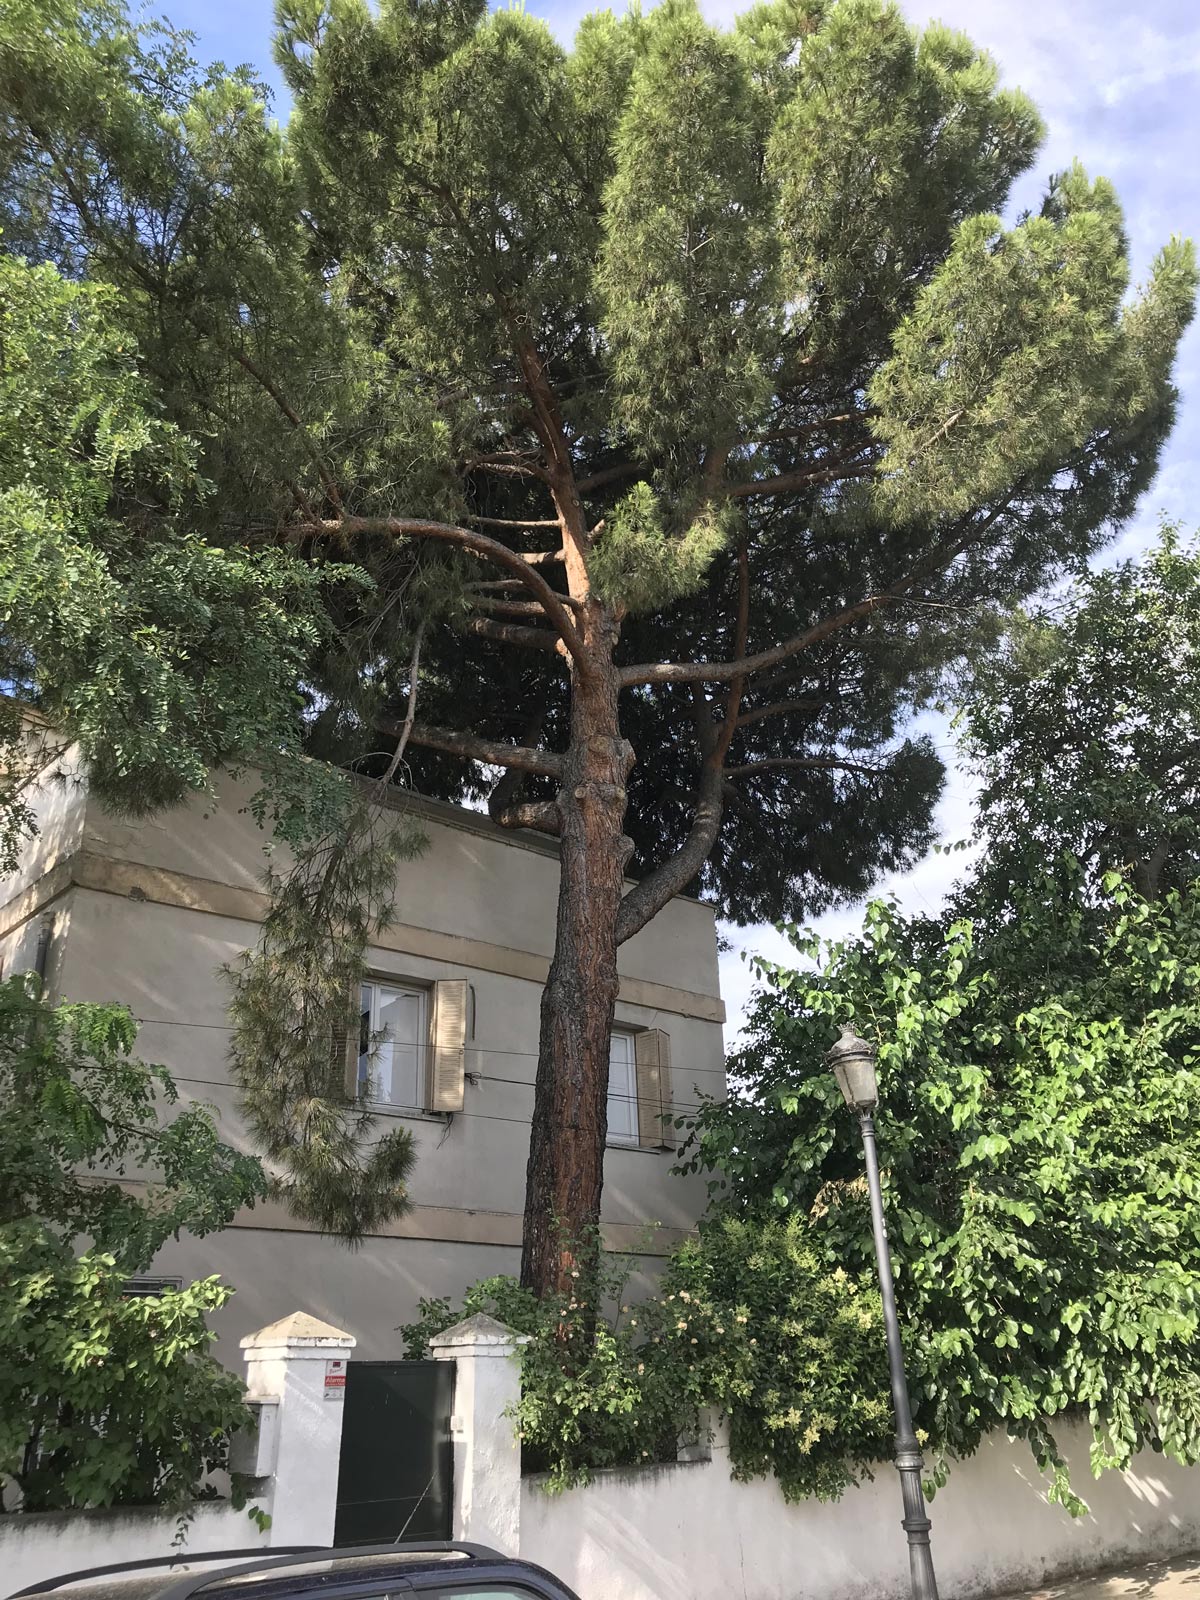 radiata pine tree next to house 1200 x1600